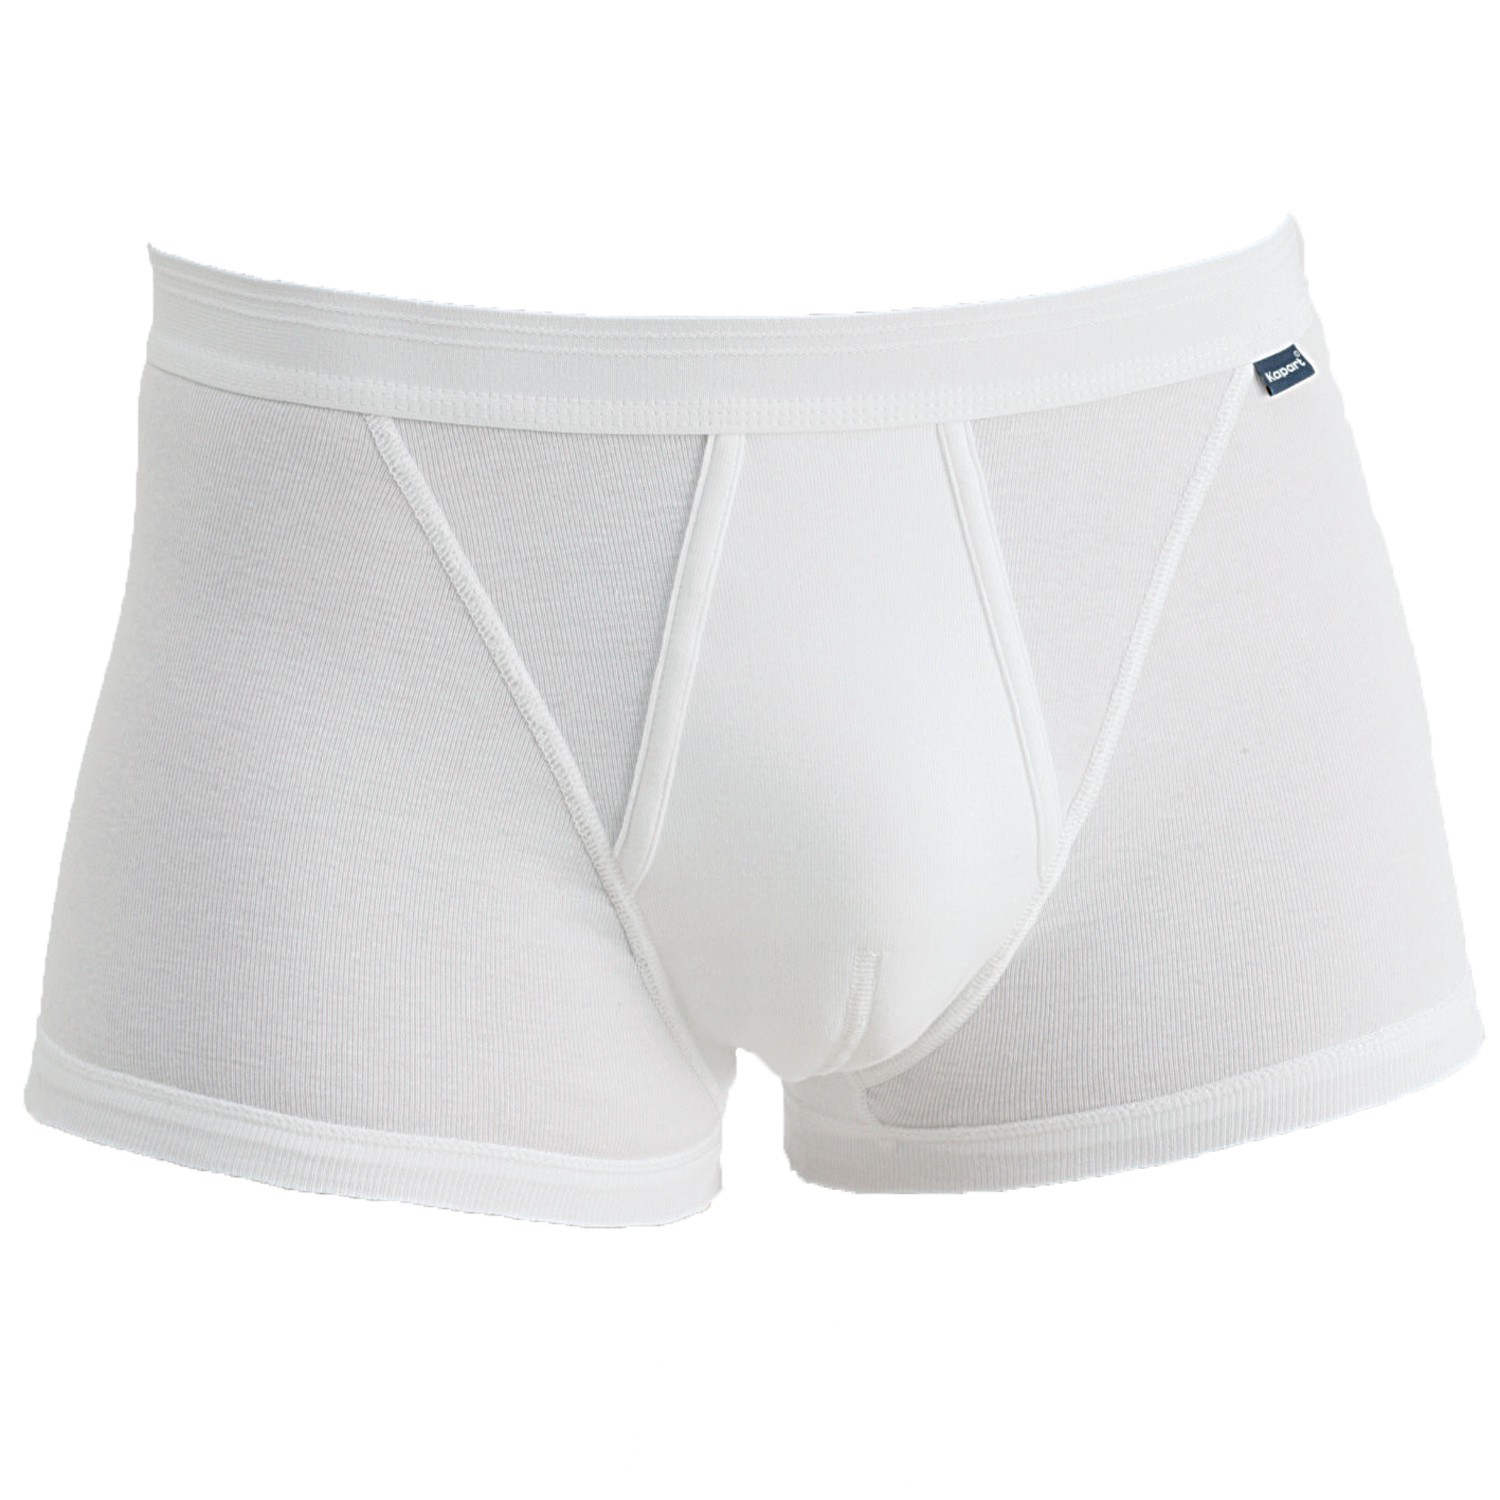 XXL Pant/Unterhose mit Feinripp - KAPART Markenqualität